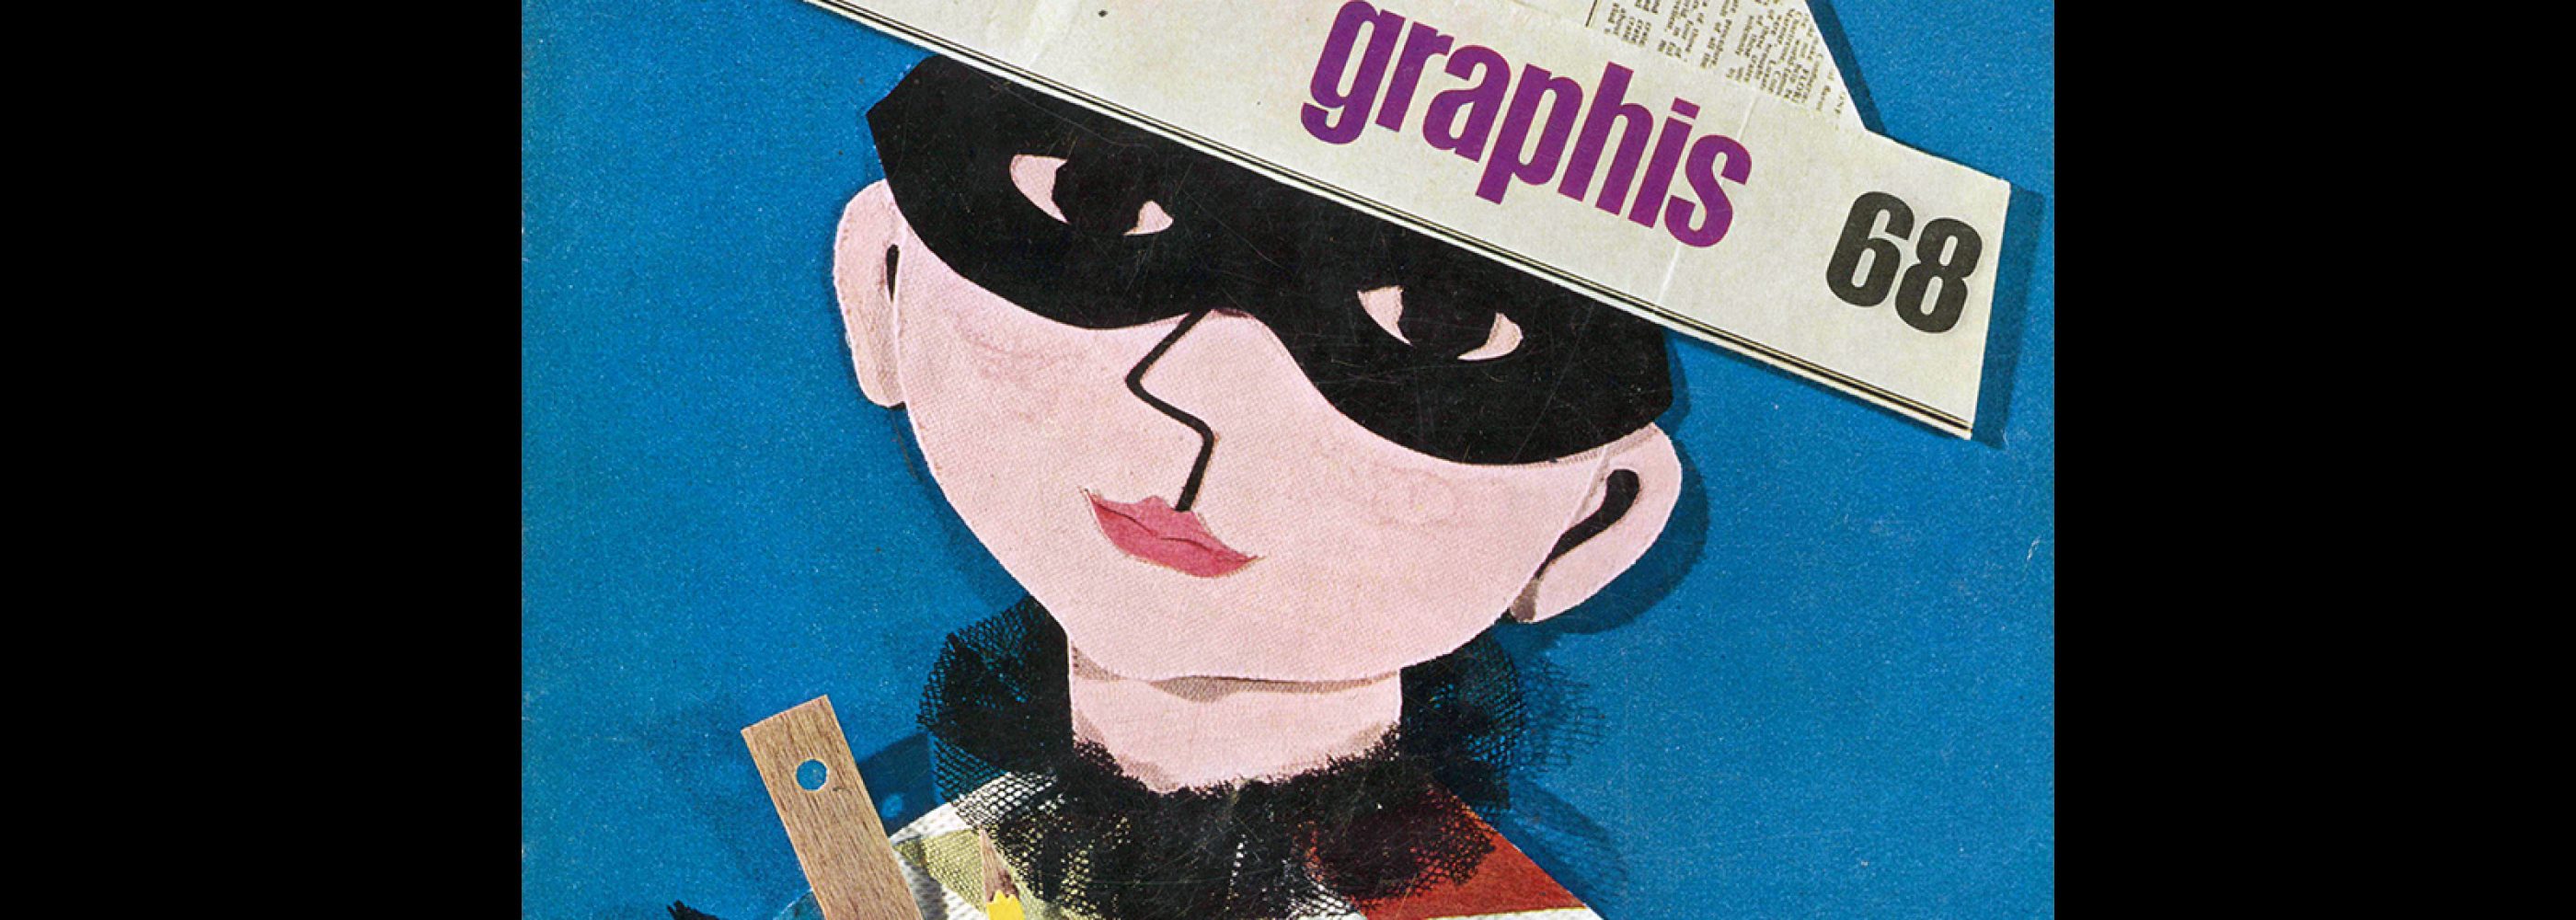 Graphis 68, 1956. Cover design by Joan Jordan